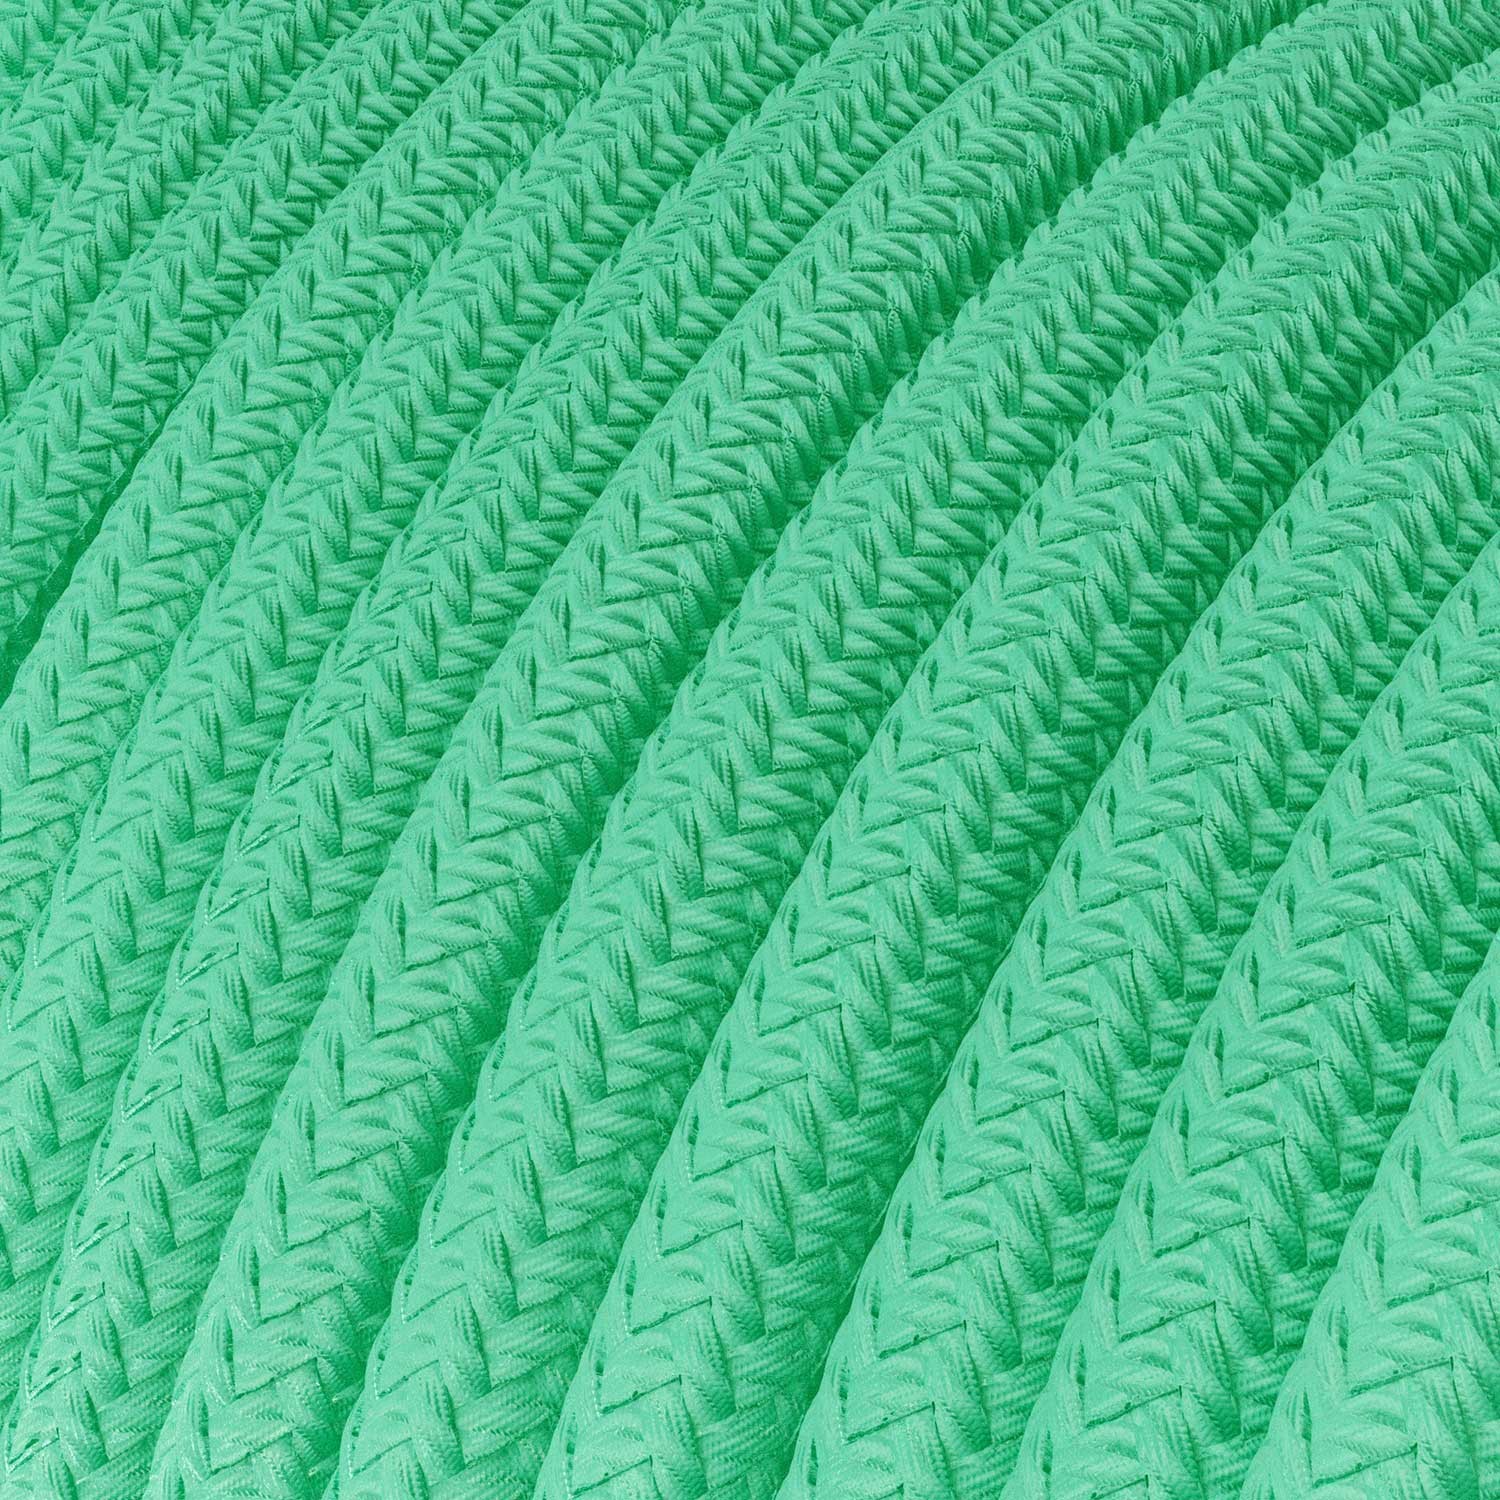 Elektrisches Kabel rund überzogen mit Textil-Seideneffekt Einfarbig Opalgrün RH69